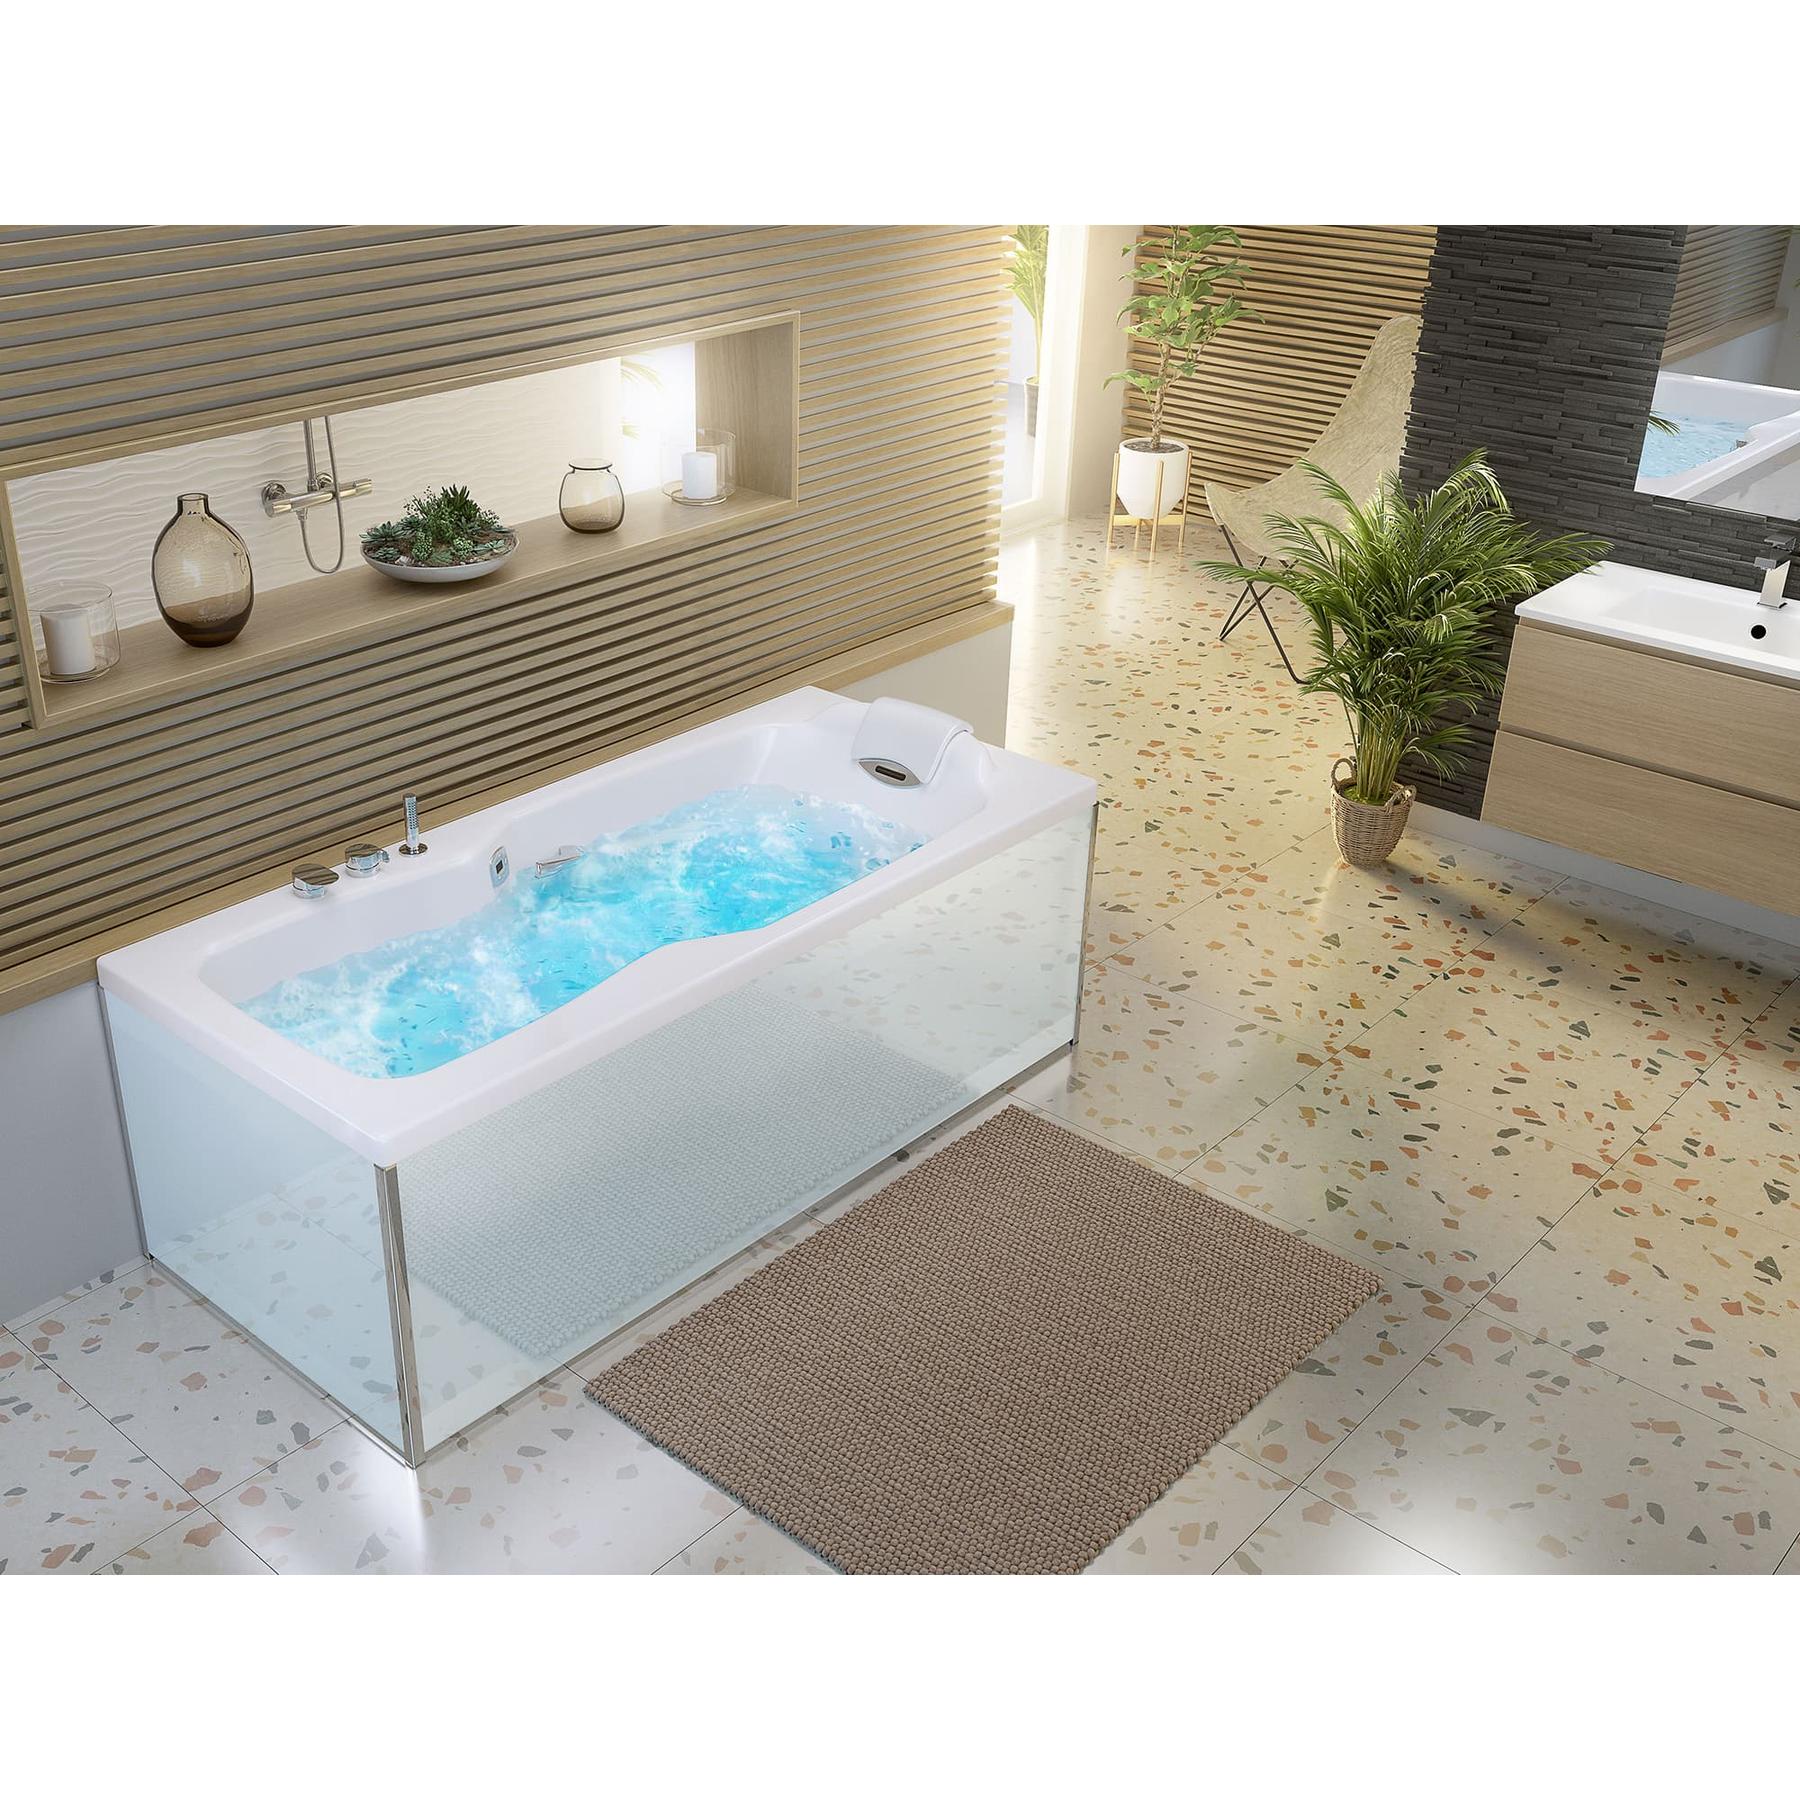 Tablier de baignoire en verre blanc 70 compatible avec toutes les baignoires KINEDO rectangulaires sauf modèles STAR et SAMBA